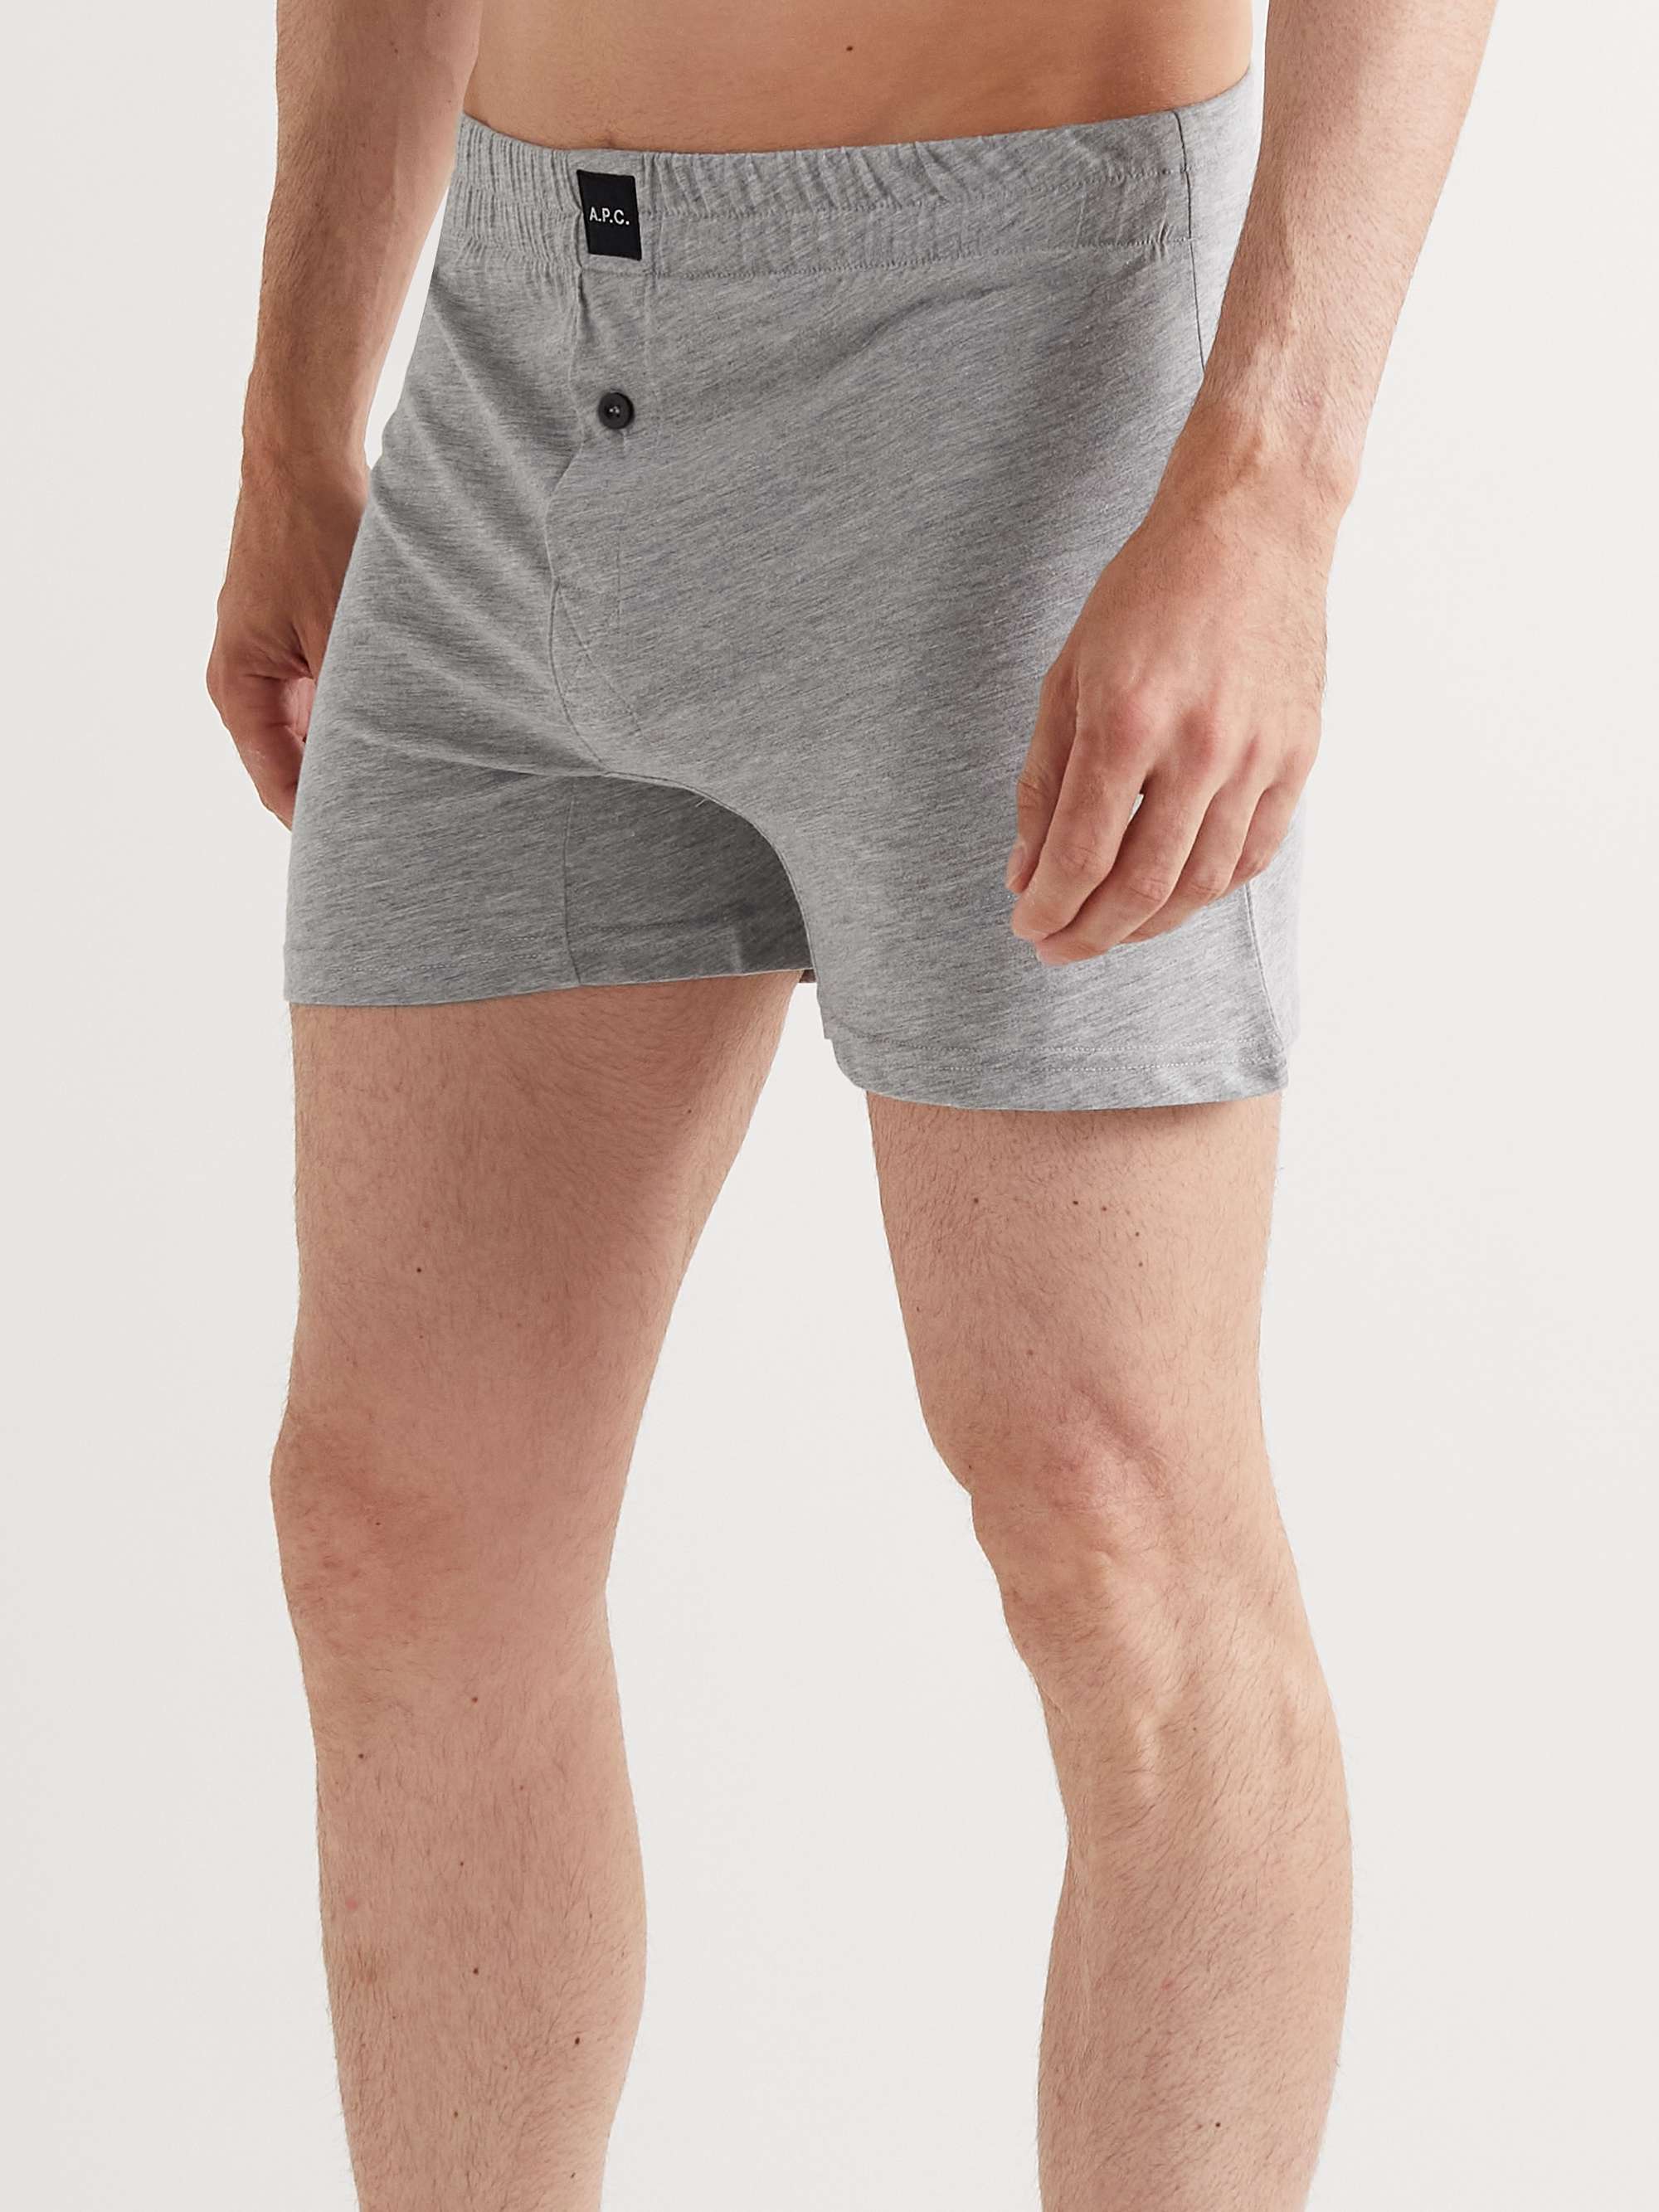 A.P.C. Cotton-Jersey Boxer Shorts